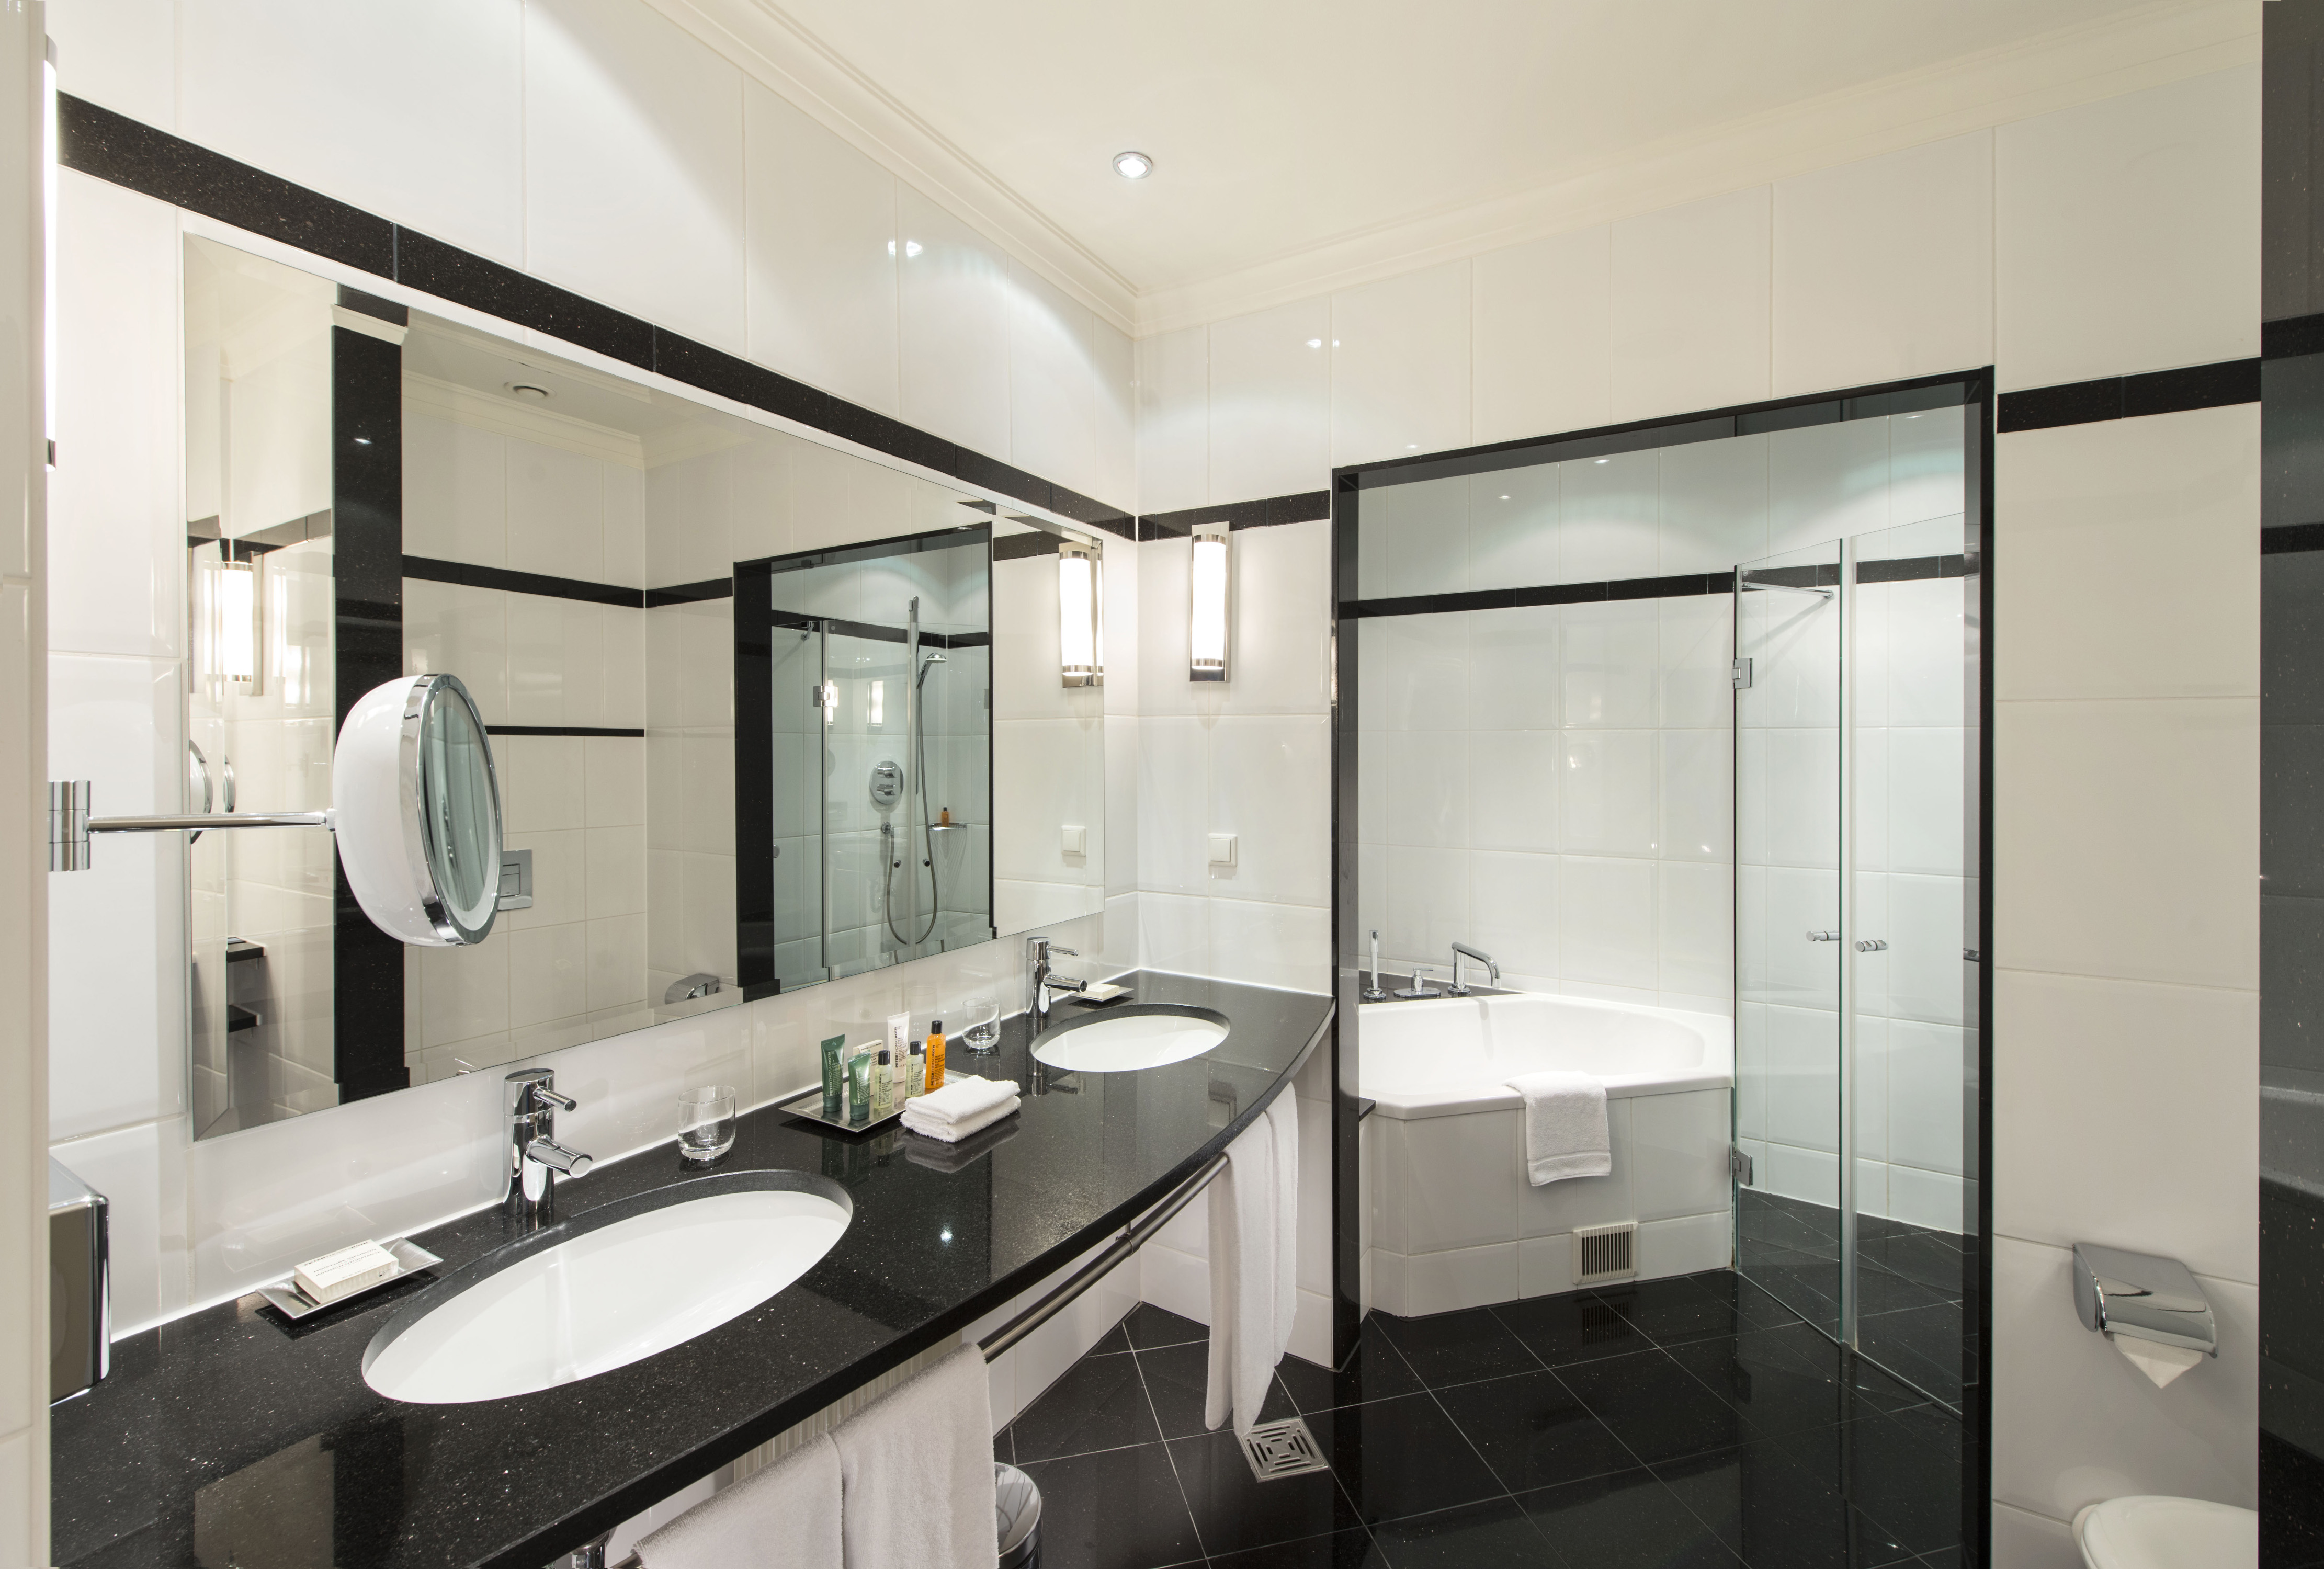 Badezimmer der Dome Suite mit Toilettentisch, Waschbecken, Spiegeln, Badewanne und Dusche